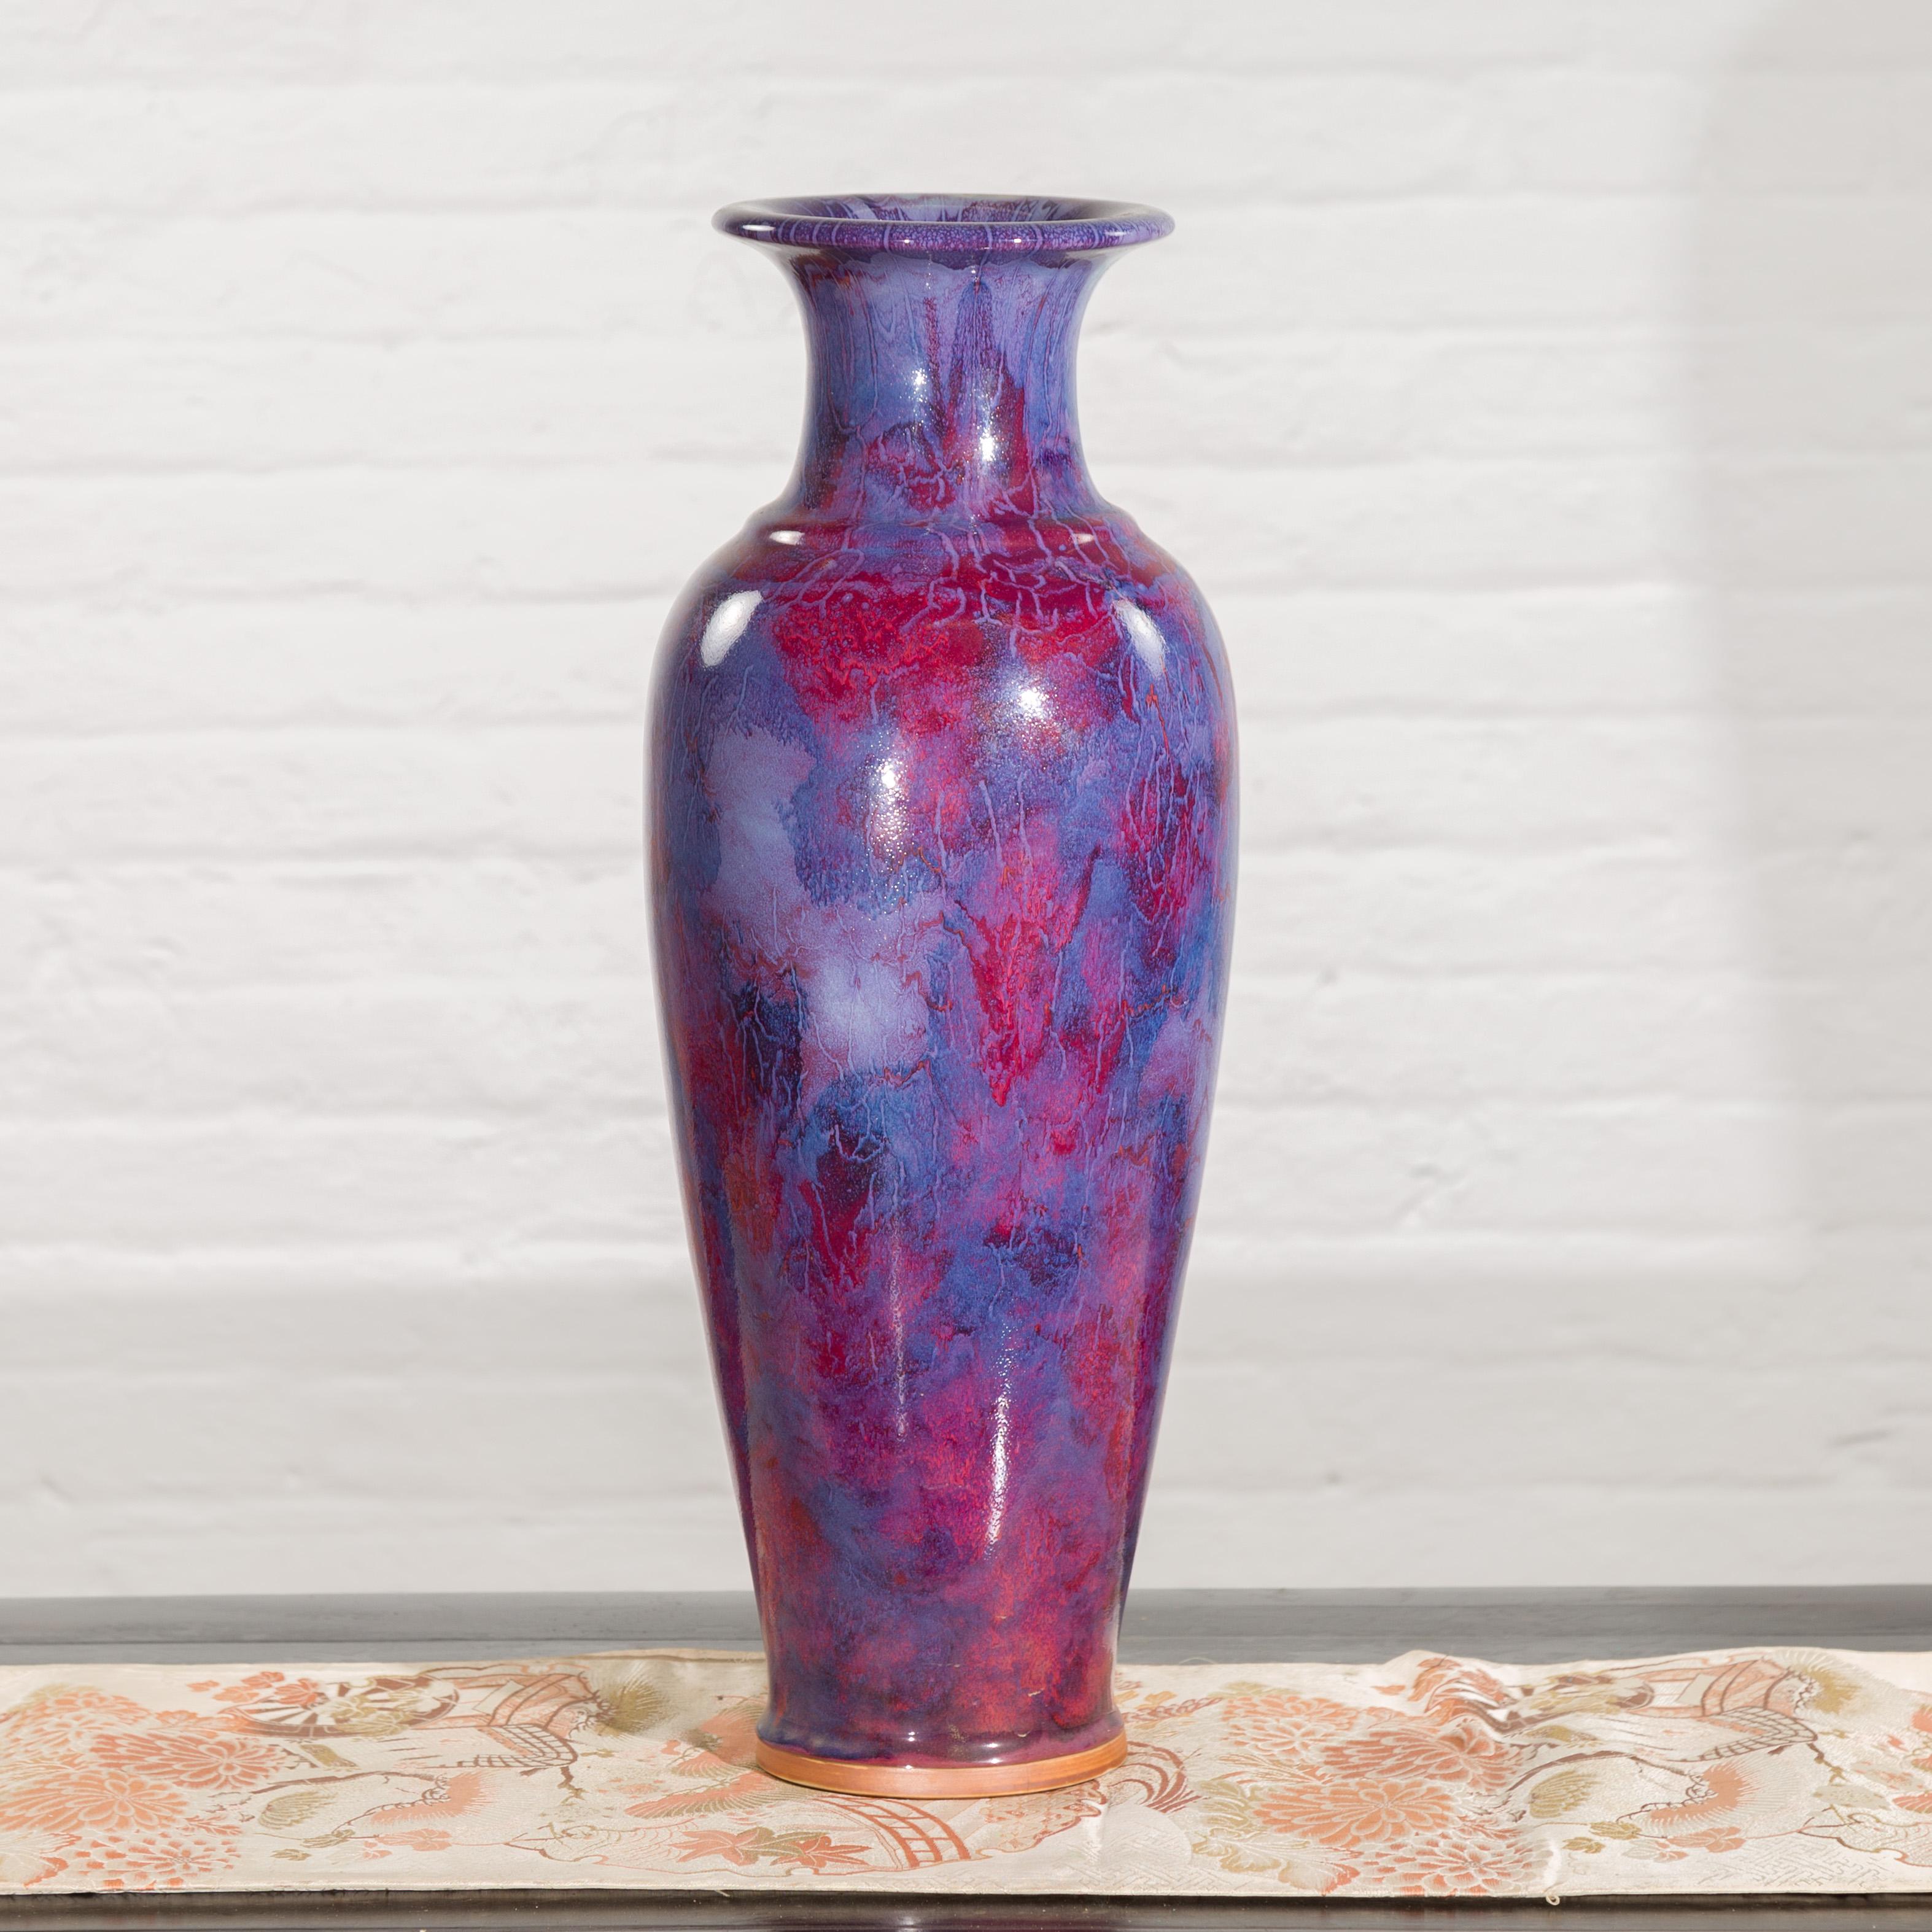 Eine zeitgenössische, handwerklich hergestellte thailändische Vase in den Farben Lila und Ochsenblut. Diese in Thailand hergestellte Vase zieht unsere Aufmerksamkeit mit ihrer mehrfarbigen Oberfläche auf sich, die violette und ochsenblutfarbene Töne